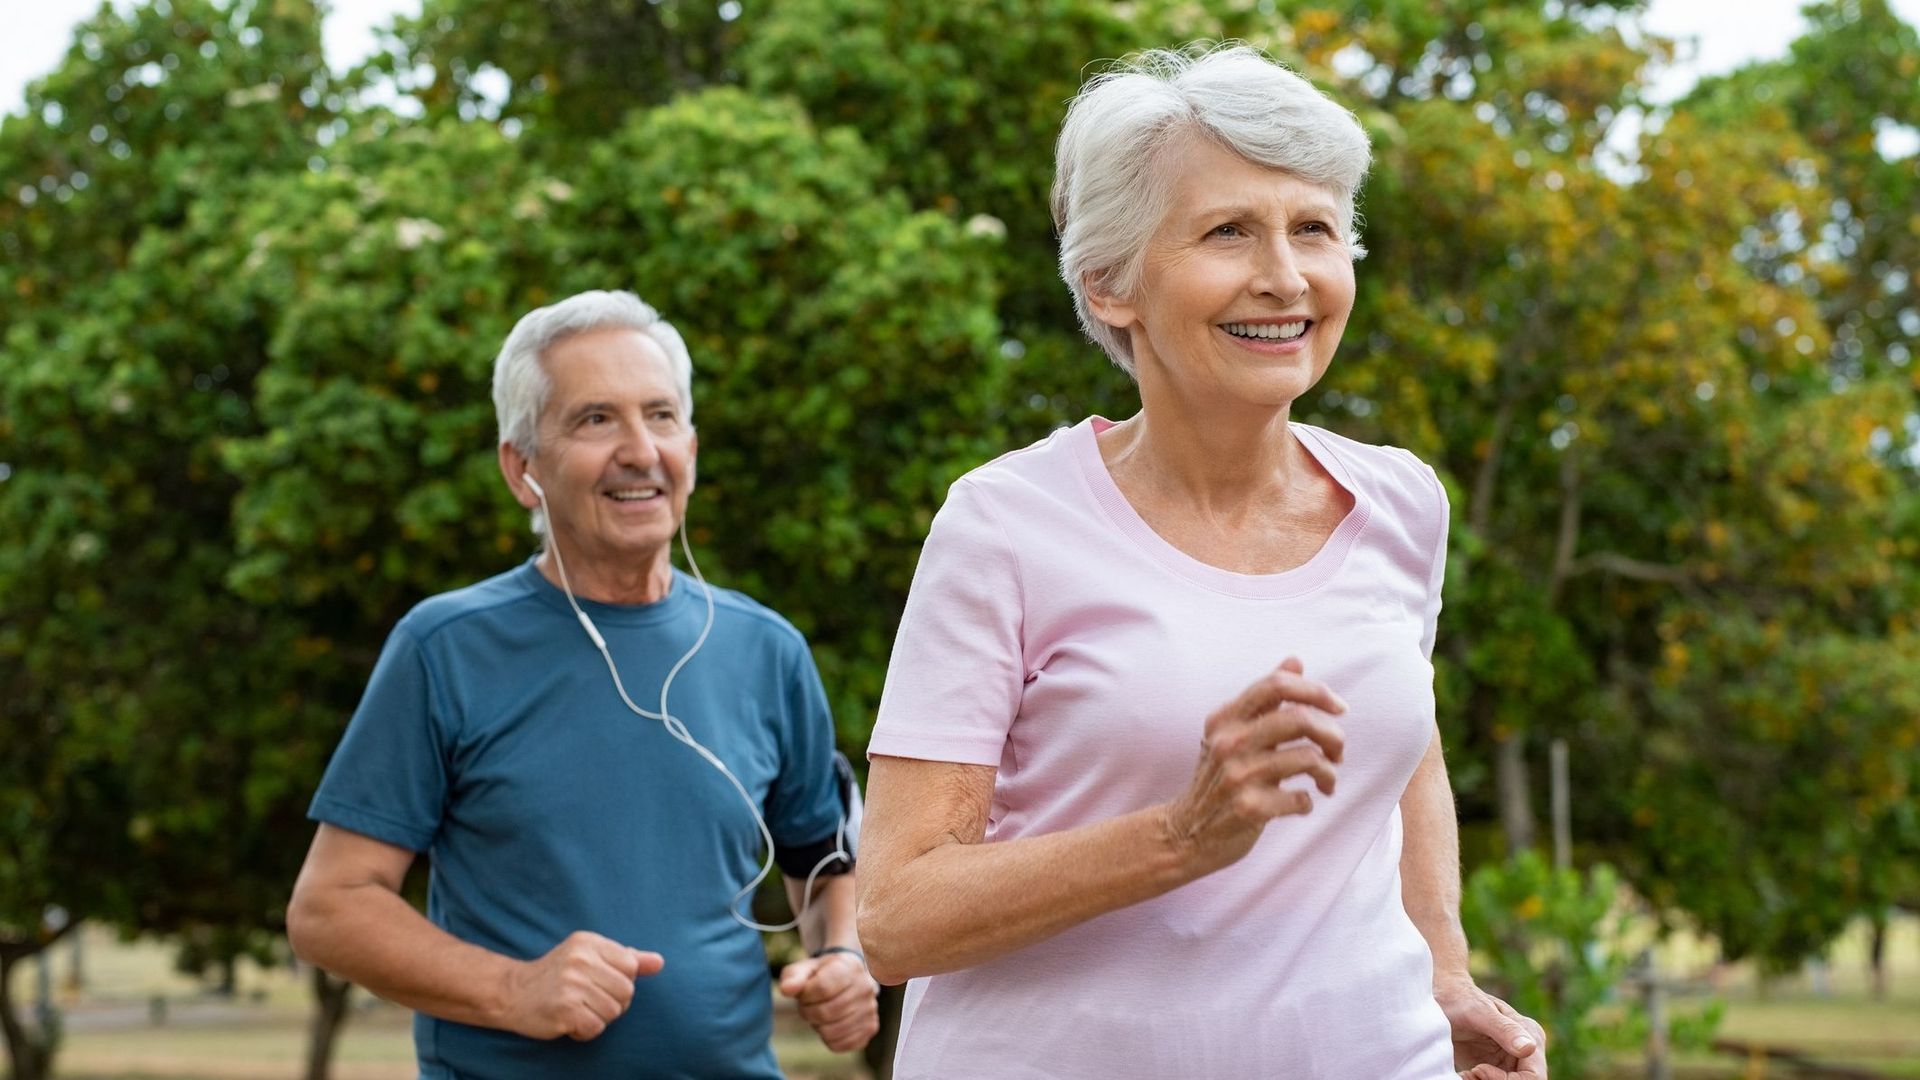 L'exercice physique régulier limite les décès de maladies cardiaques chez les femmes.